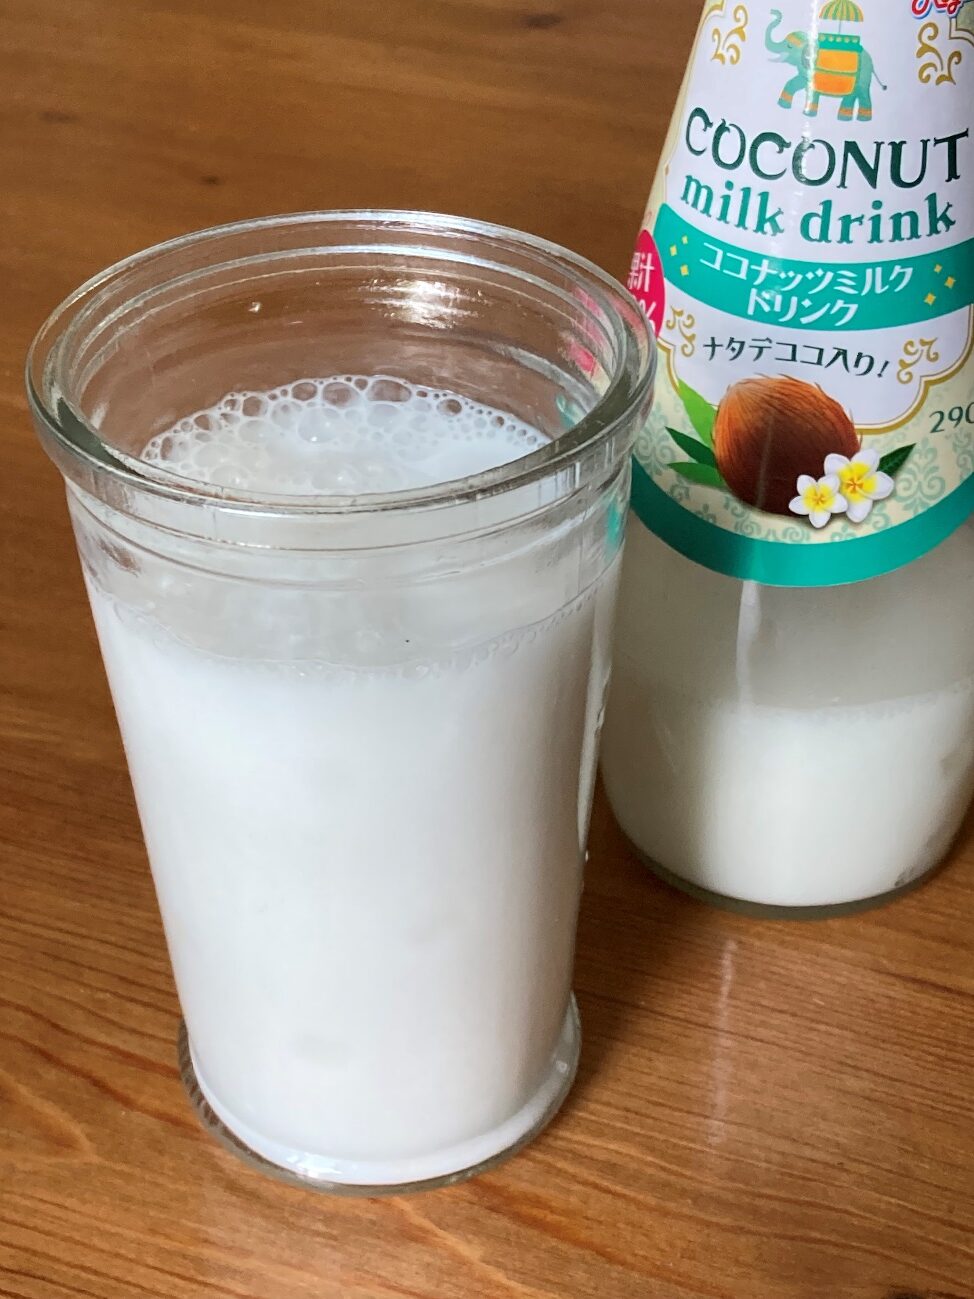 業務スーパーのココナッツミルクドリンクの瓶とグラスに注いだココナッツミルク